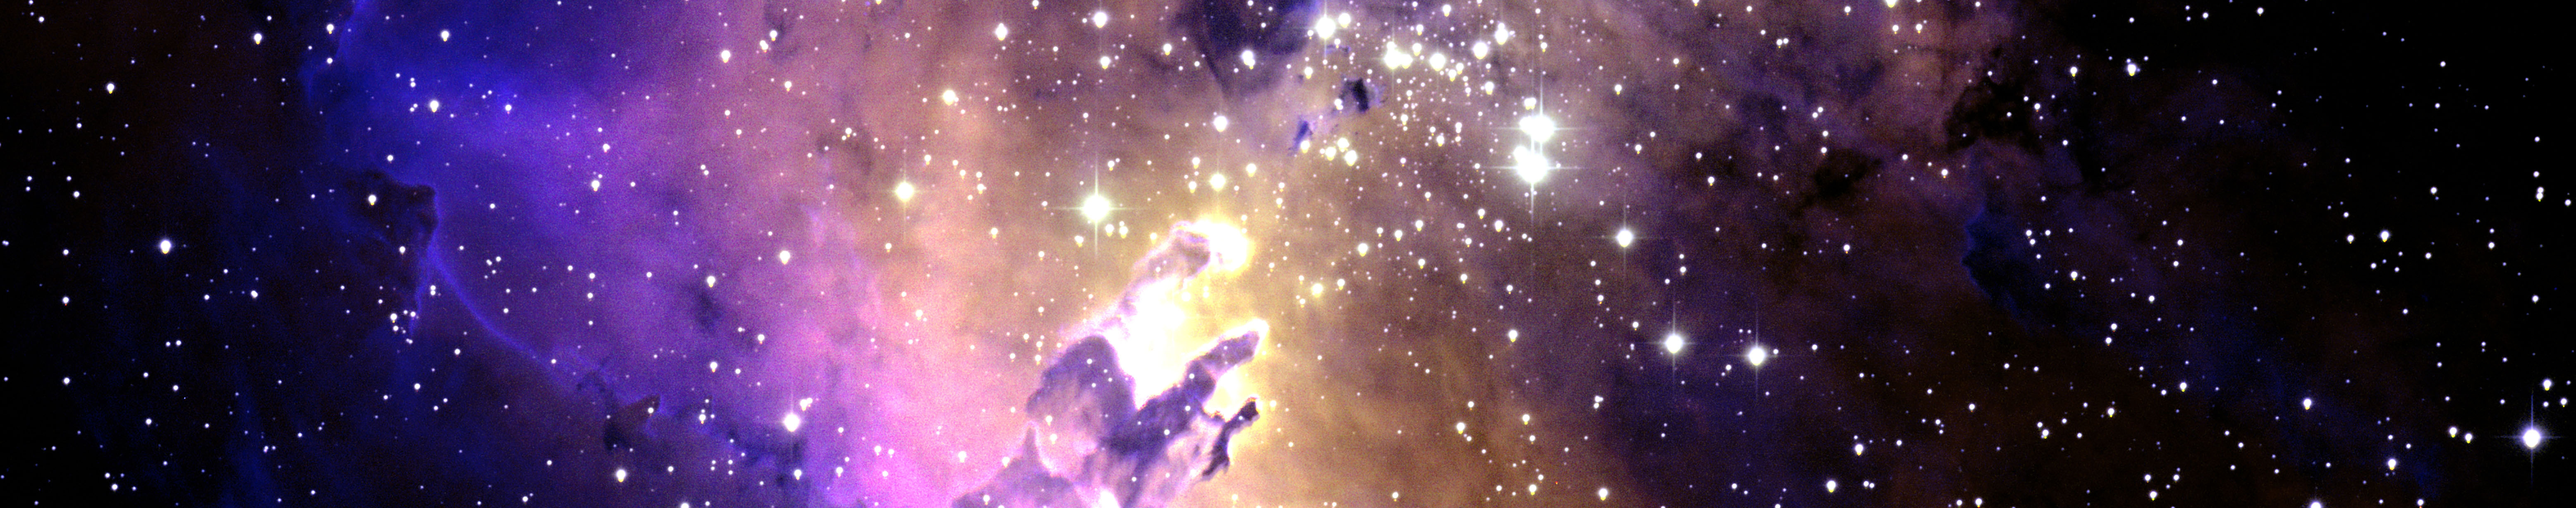 Eagle Nebula Credits: Liese vanZee